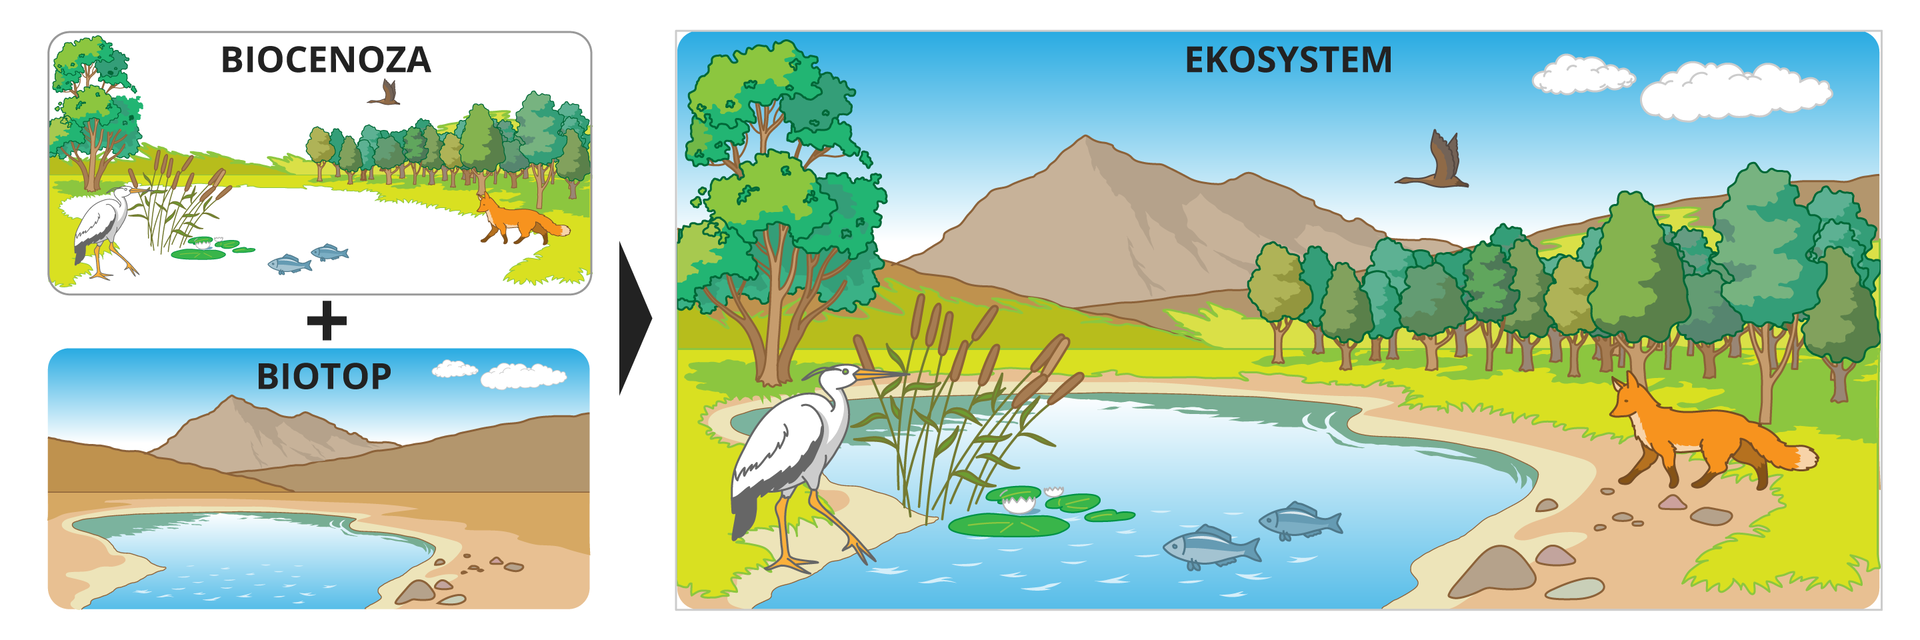 Dwie ilustracje przedstawiają składniki ekosystemu. Górna ilustracja przedstawia biocenozę – część ożywioną ekosystemu, do której należą: rośliny, zwierzęta, grzyby i inne organizmy. Dolna ilustracja przedstawia biotop – część nieożywioną, do której należą: skały, kamienie, wody, różne formy terenu. Biocenoza plus biotop na jednej ilustracji, po prawej stronie, tworzą ekosystem. Oba składniki ekosystemu oddziałują wzajemnie na siebie.